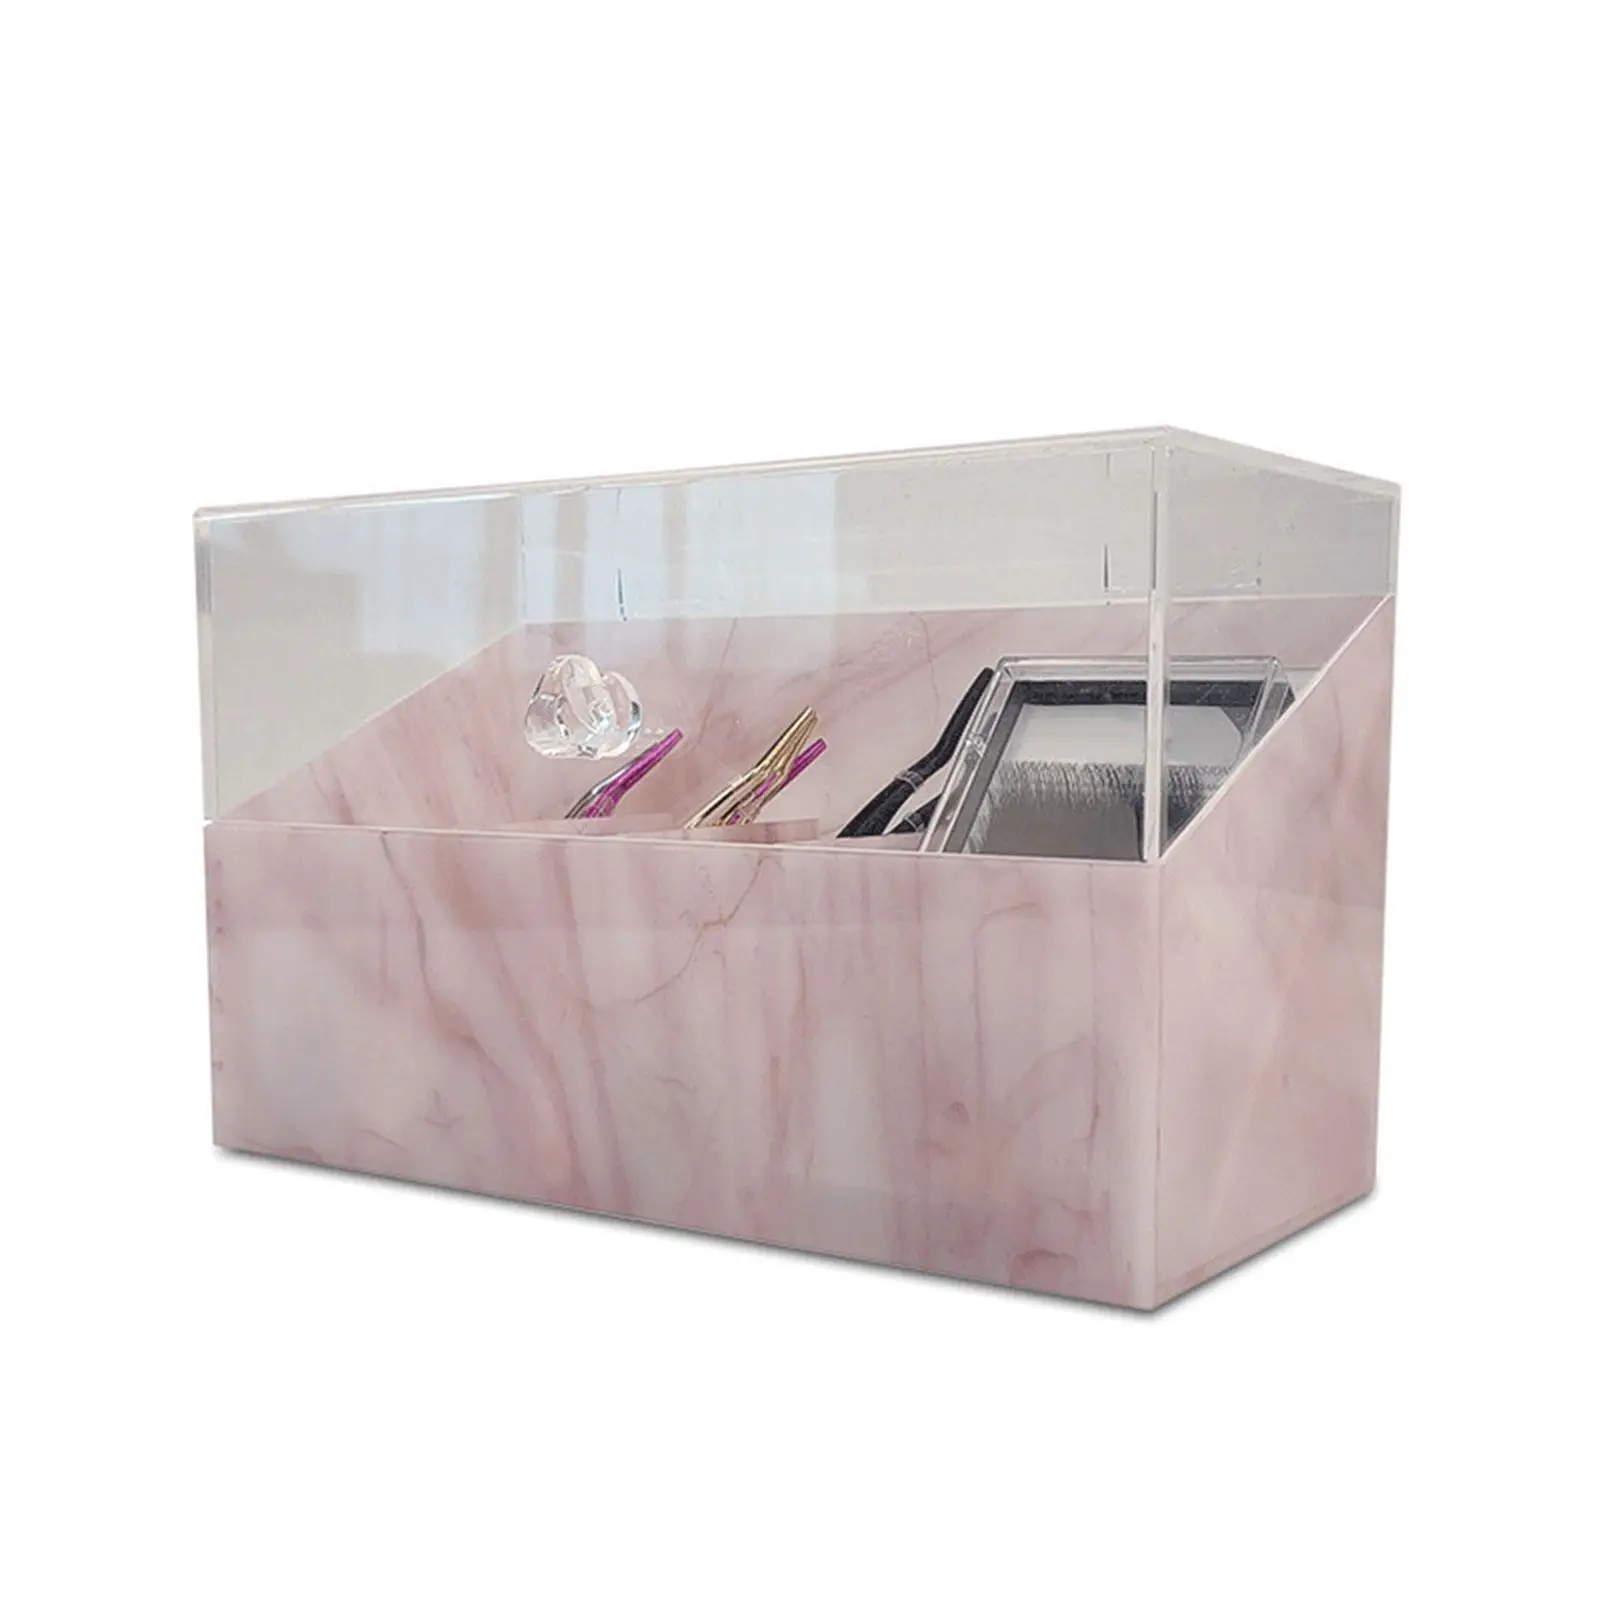 Eyelash Tweezers Holder Tweezers Stand Case Acrylic with Cover Dustproof Tweezers Display Box for Lash Extension Beauty Salon